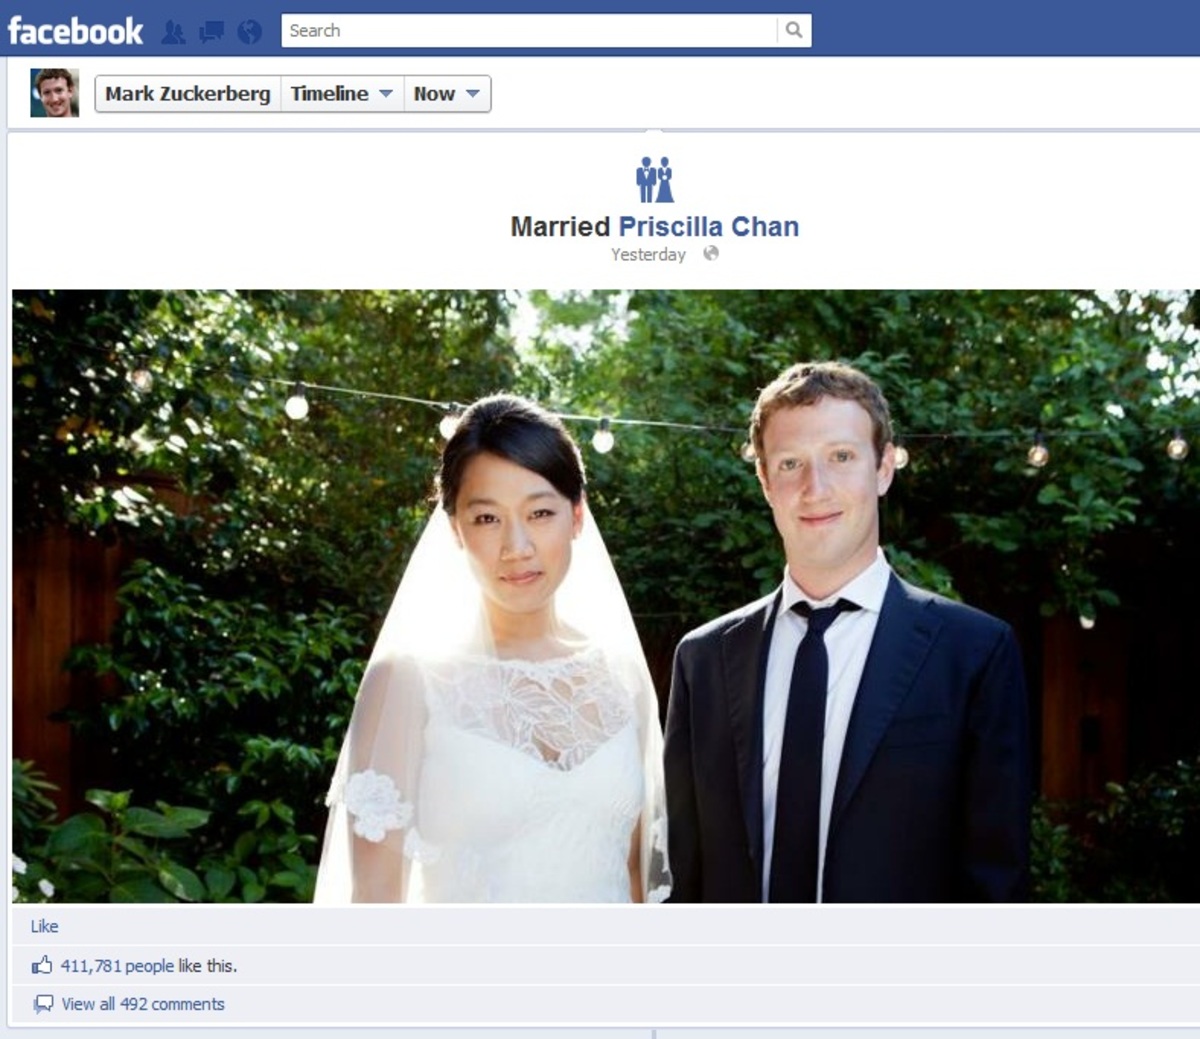 Ο Ζούκερμπεργκ παντρεύτηκε και το ανακοίνωσε στο Facebook